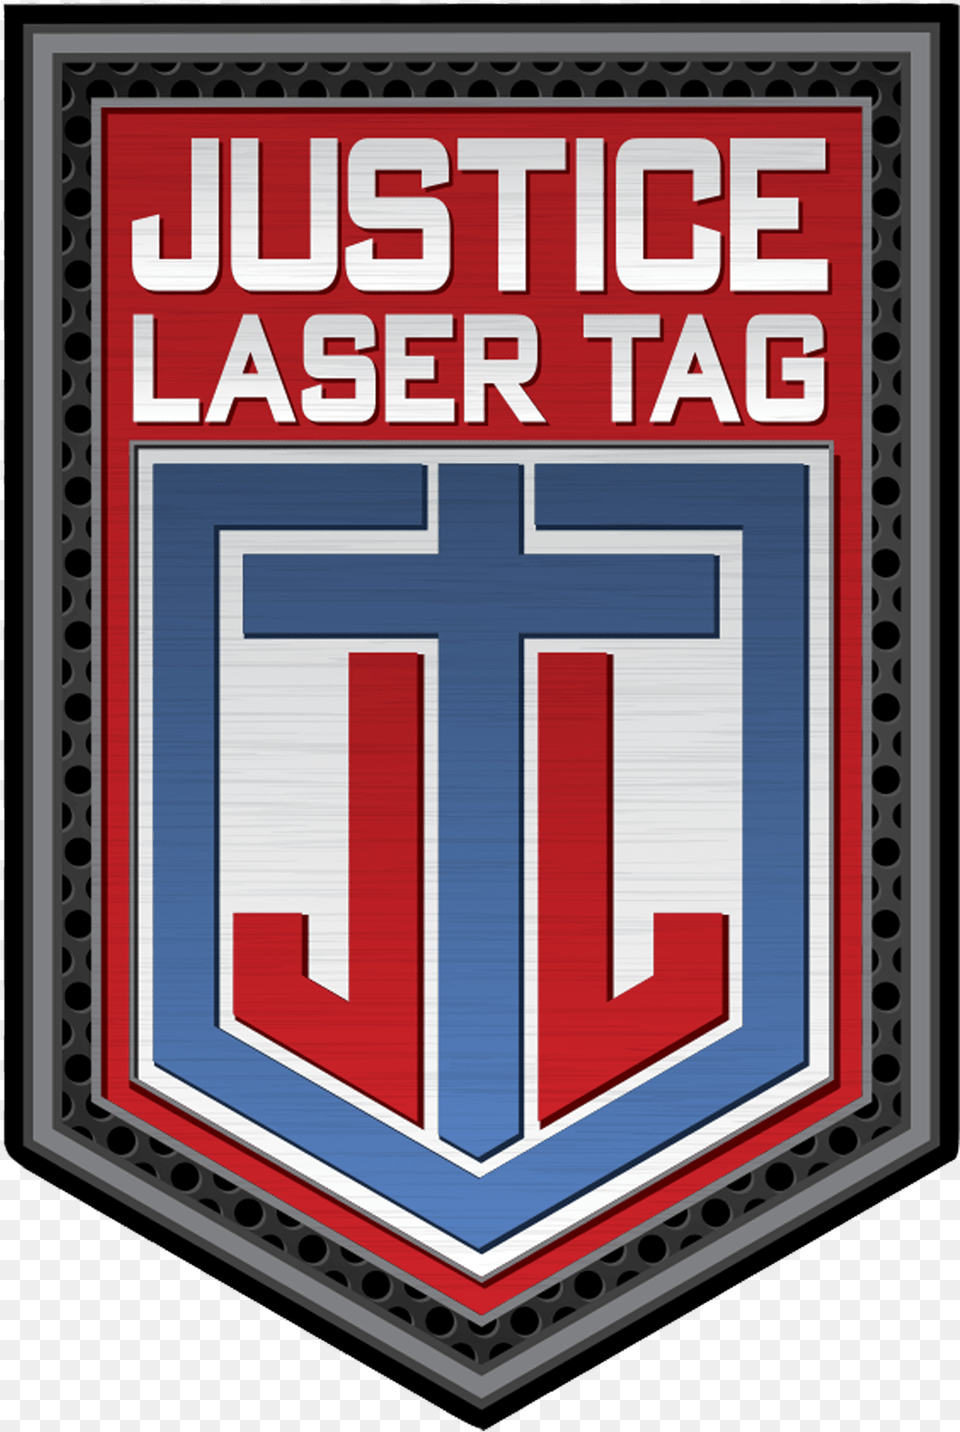 Laser Tag Emblem, Armor, Symbol Free Transparent Png